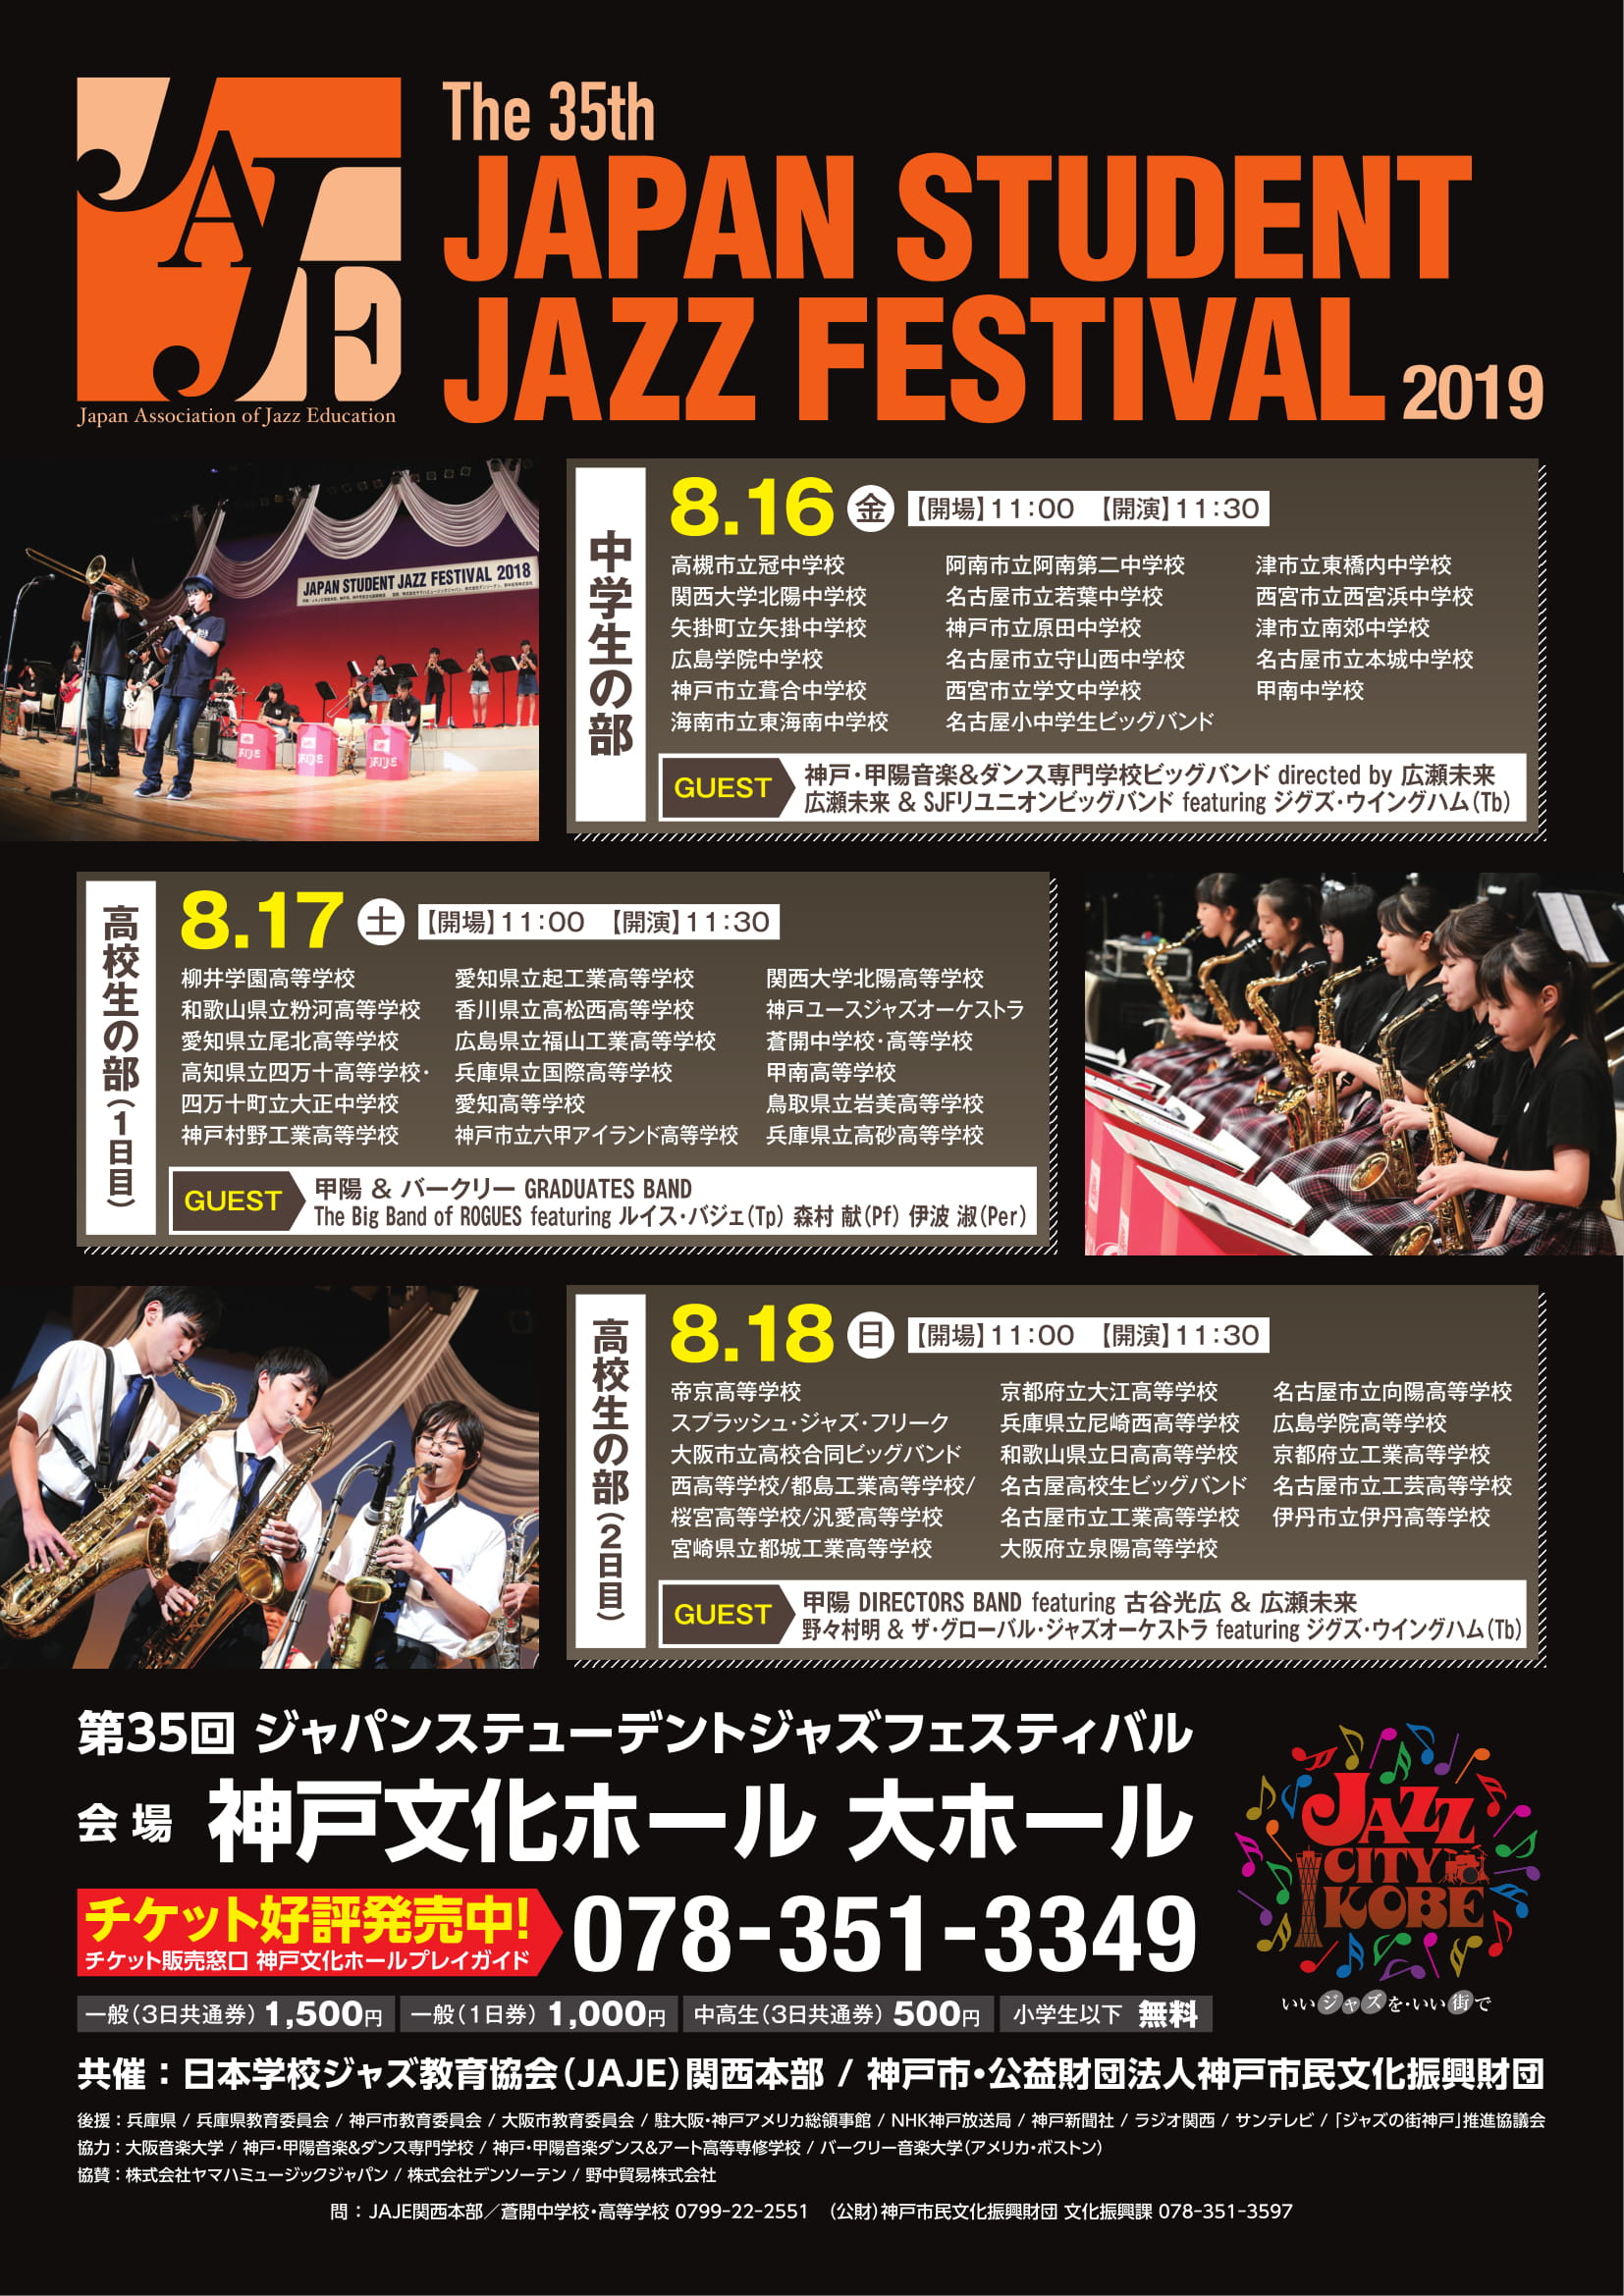 小学生以下無料 中高生ビッグバンドジャズの祭典 The 35th Japan Student Jazz Festival 19 開催 19 8 16 8 18 神戸文化ホール 吹奏楽 管楽器 打楽器 クラシック音楽のwebメディア Wind Band Press